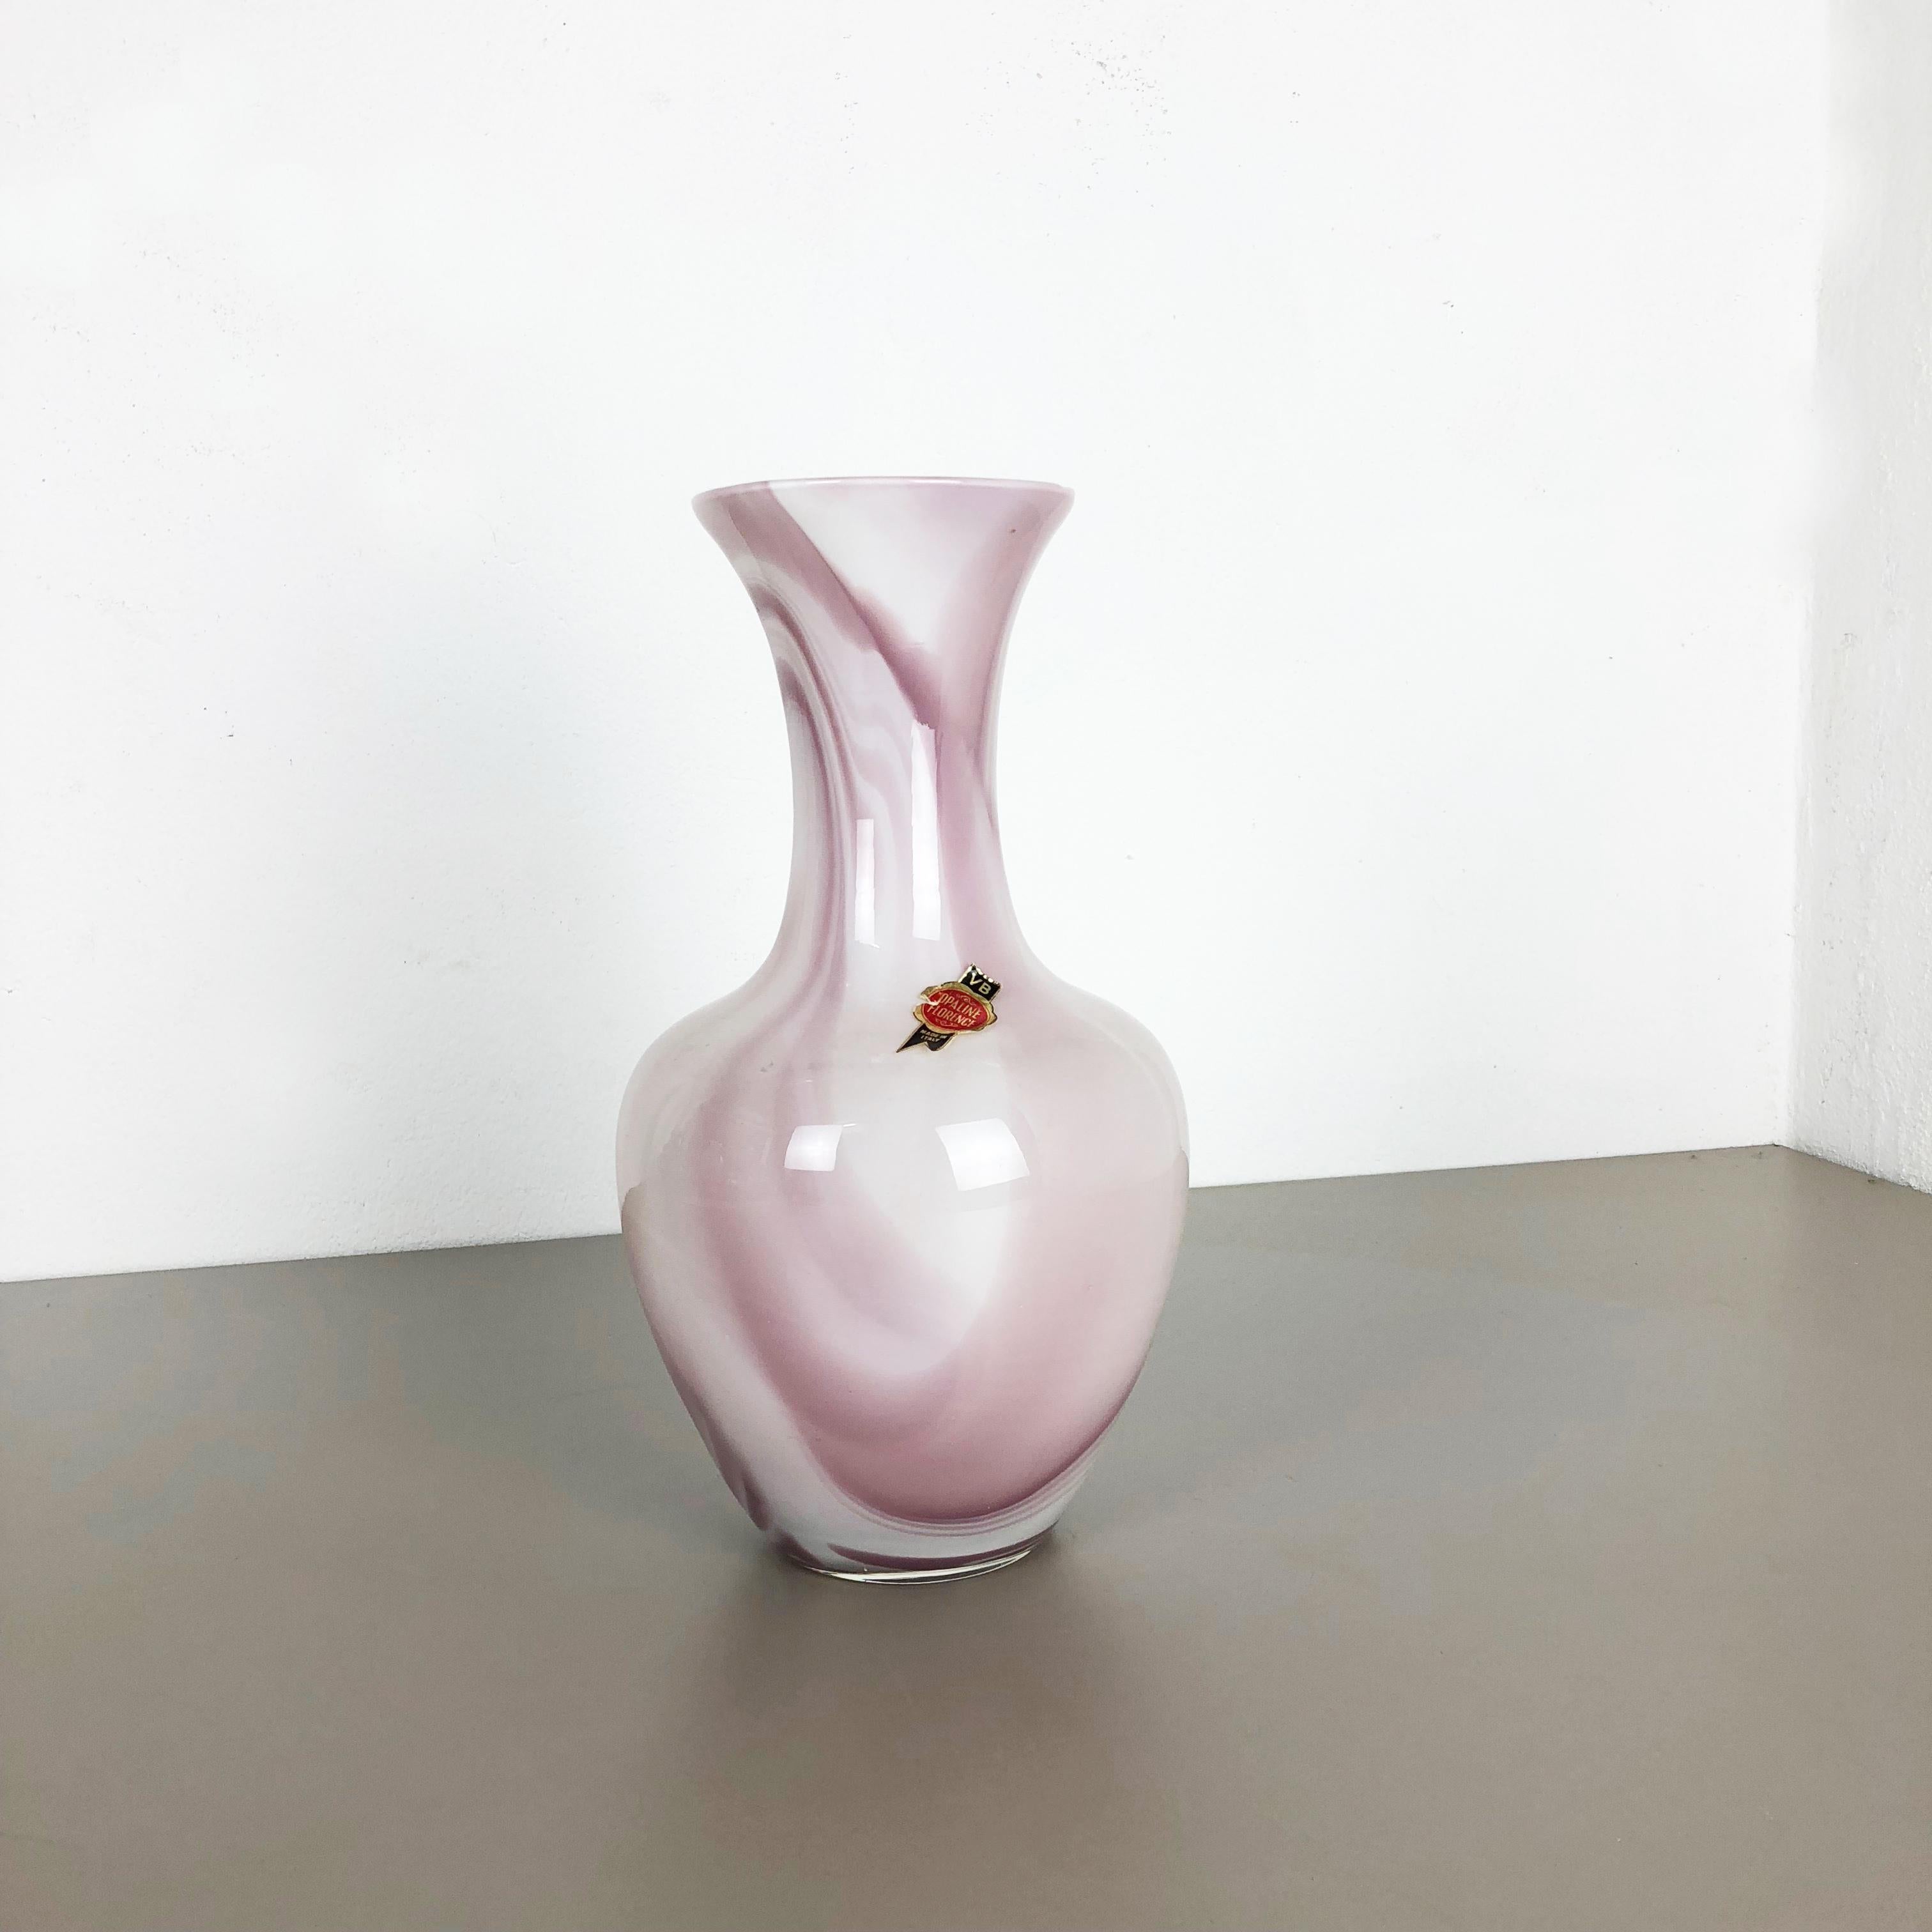 Artikel:

Pop-Art-Vase


Produzent:

Opalin Florenz



Jahrzehnt:

1970er




Originale mundgeblasene Pop-Art-Vase aus den 1970er Jahren, hergestellt in Italien von Opaline Florenz. Hergestellt aus hochwertigem italienischem